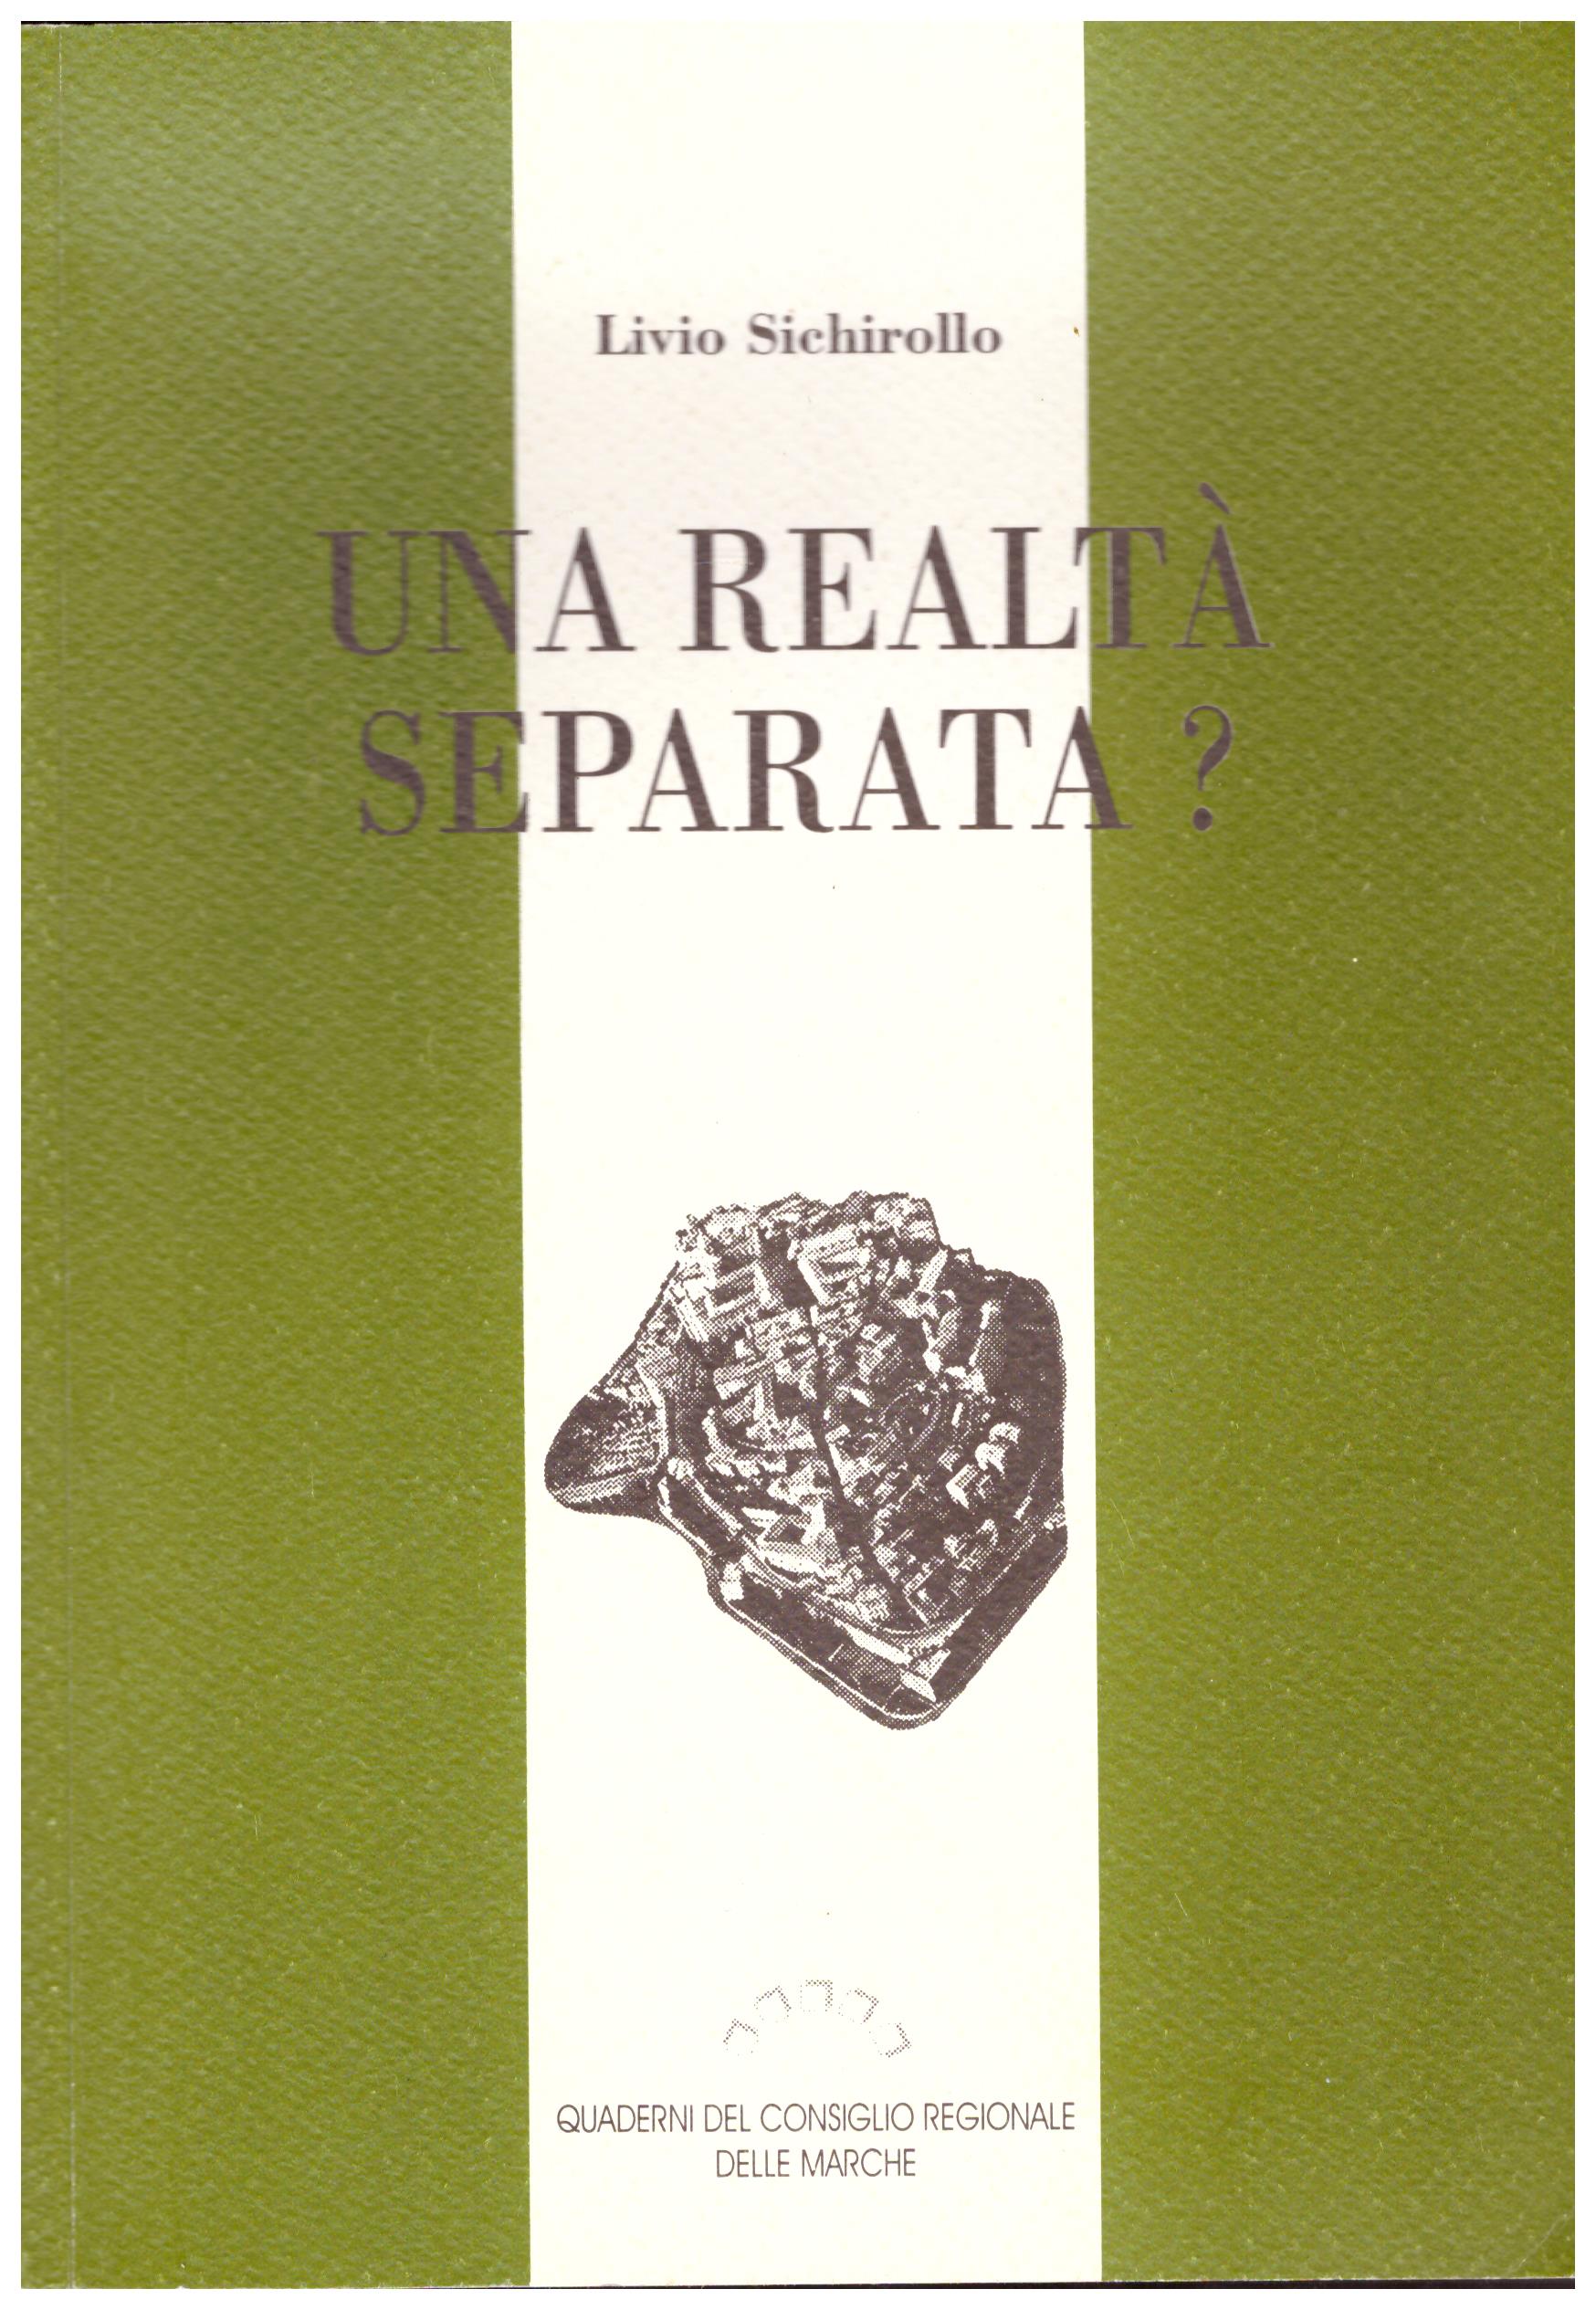 Titolo: Una realtà separata? Autore : Livio Sichirollo Editore: quaderni del consiglio regionale Marche, 1990